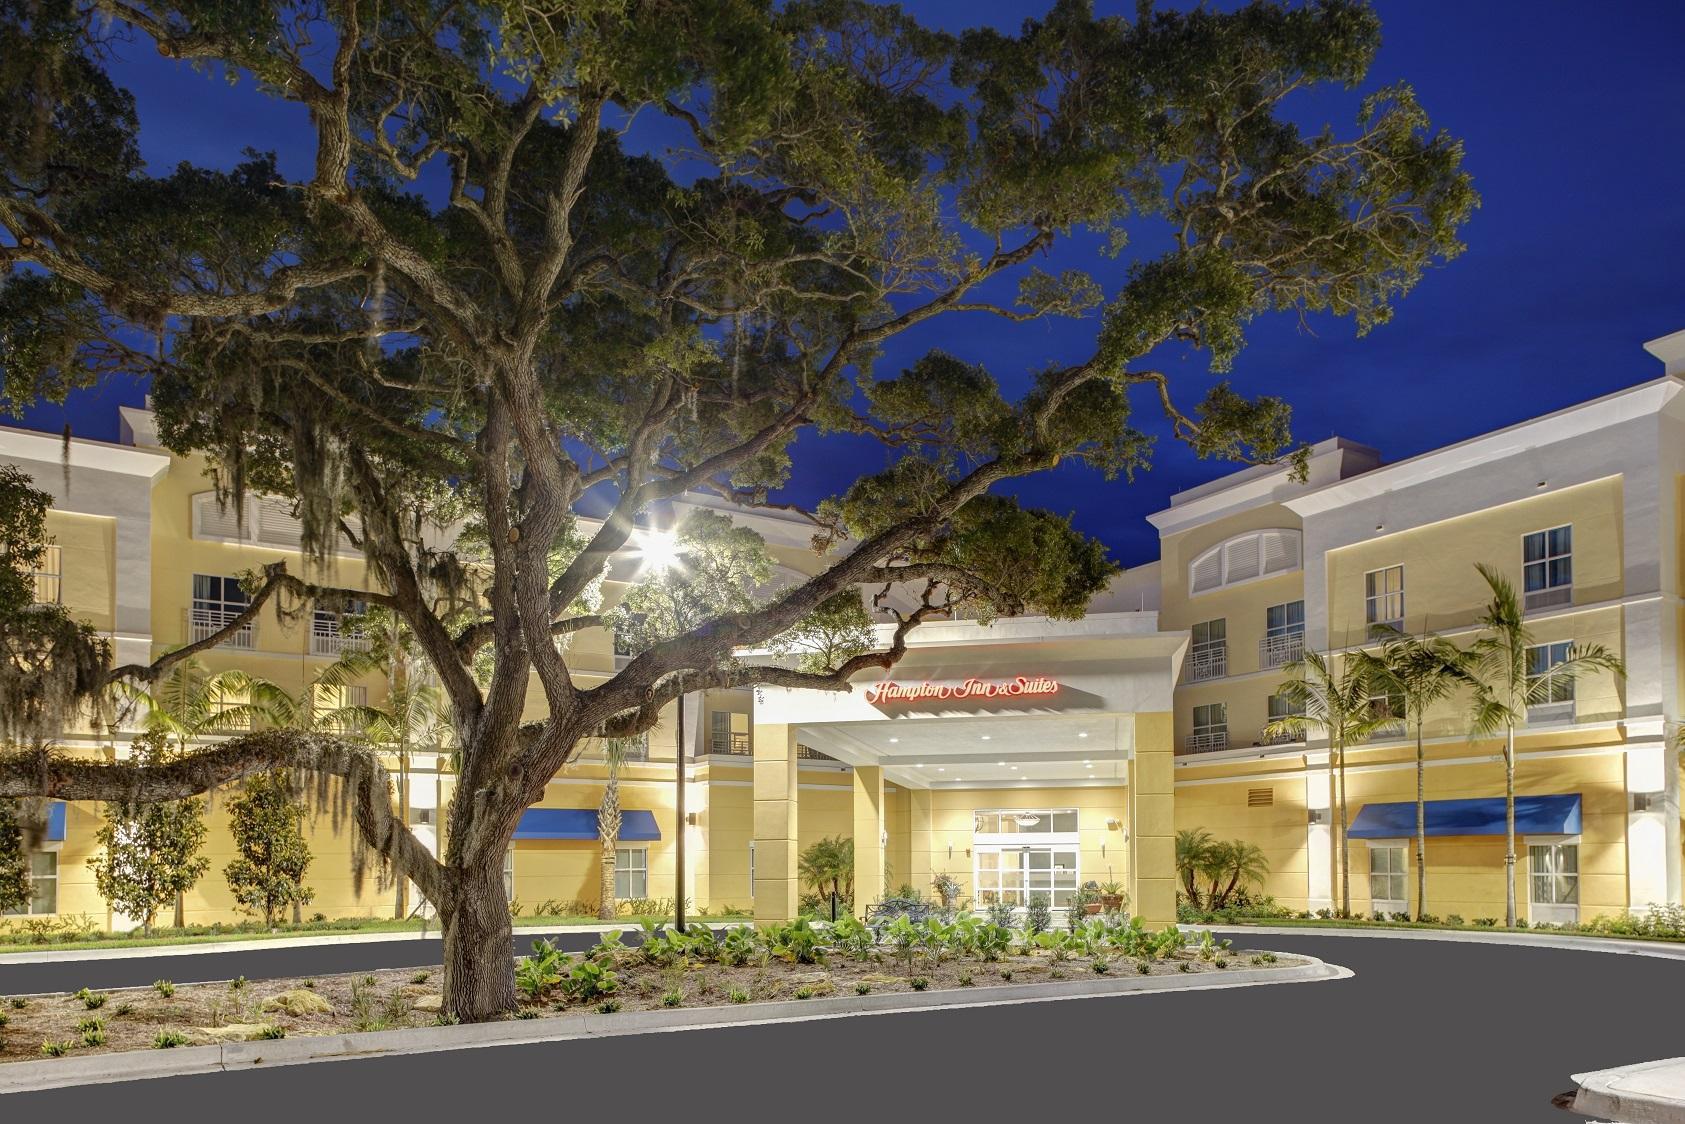 Photo of Hampton Inn & Suites Vero Beach Downtown, Vero Beach, FL